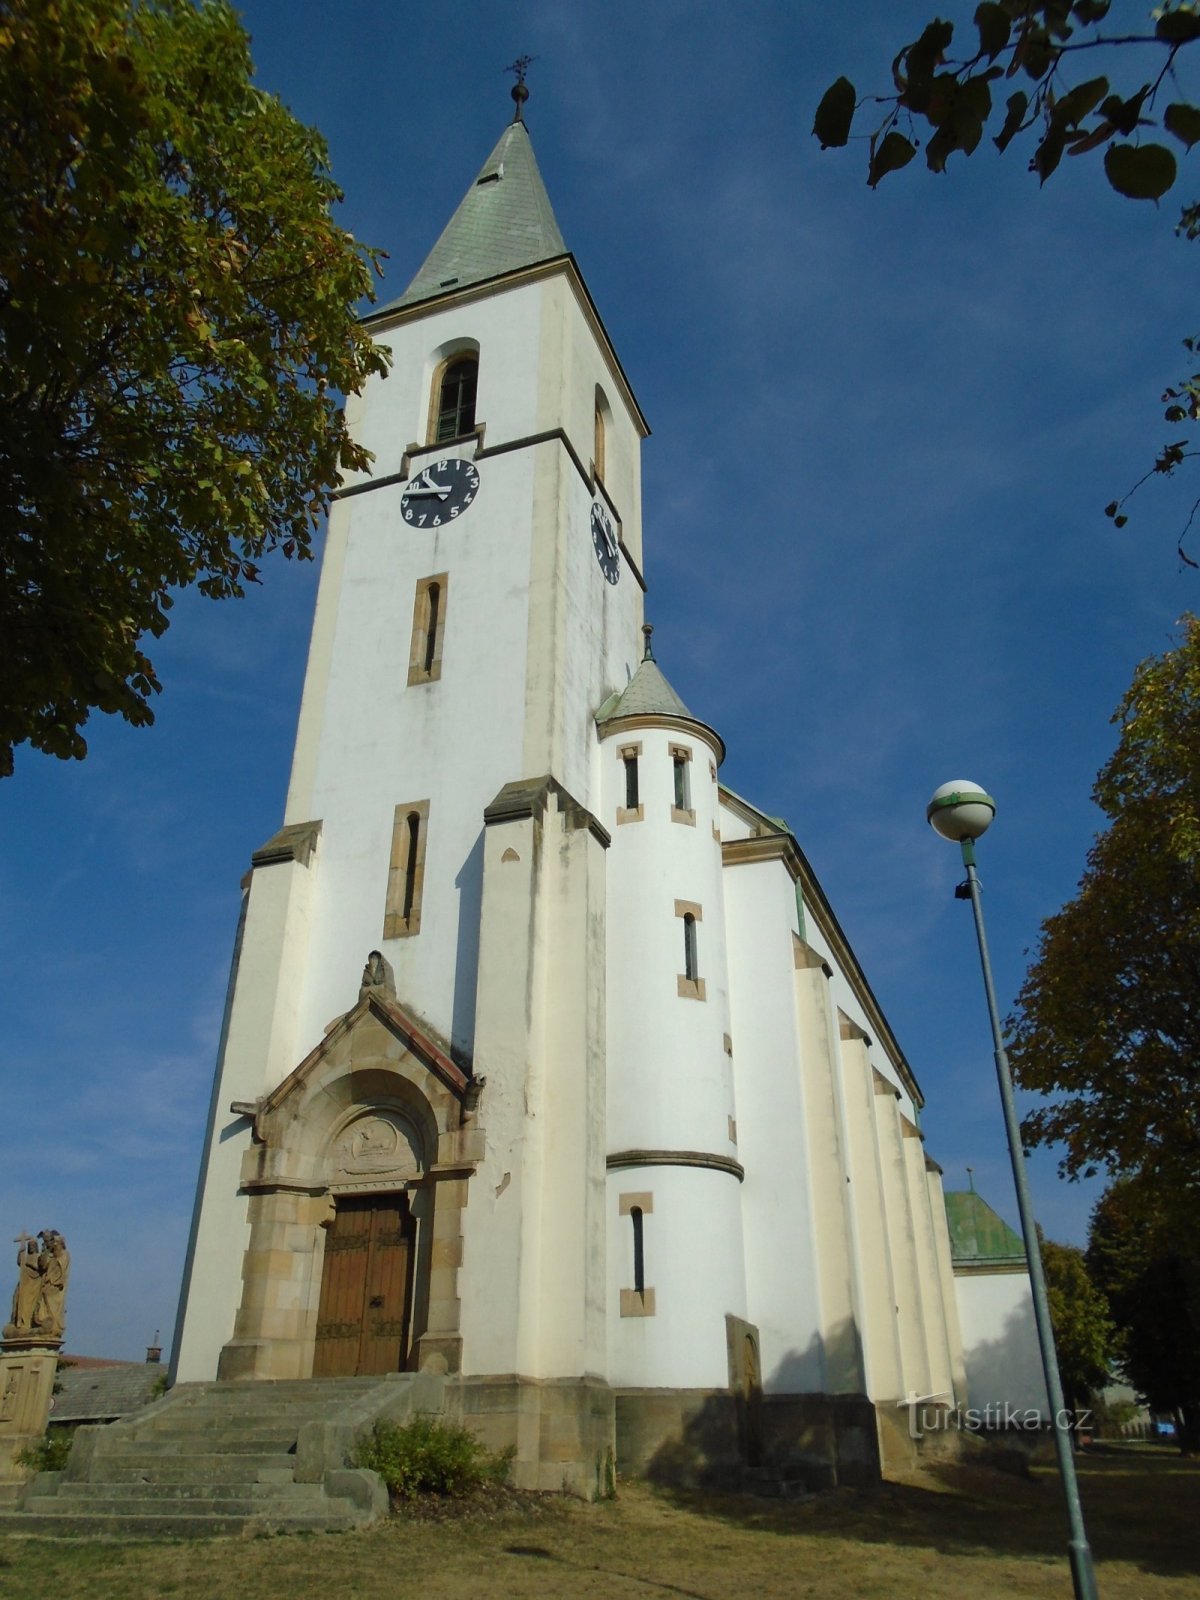 Cerkev sv. Jakub Staršího (Stračov, 21.9.2018)